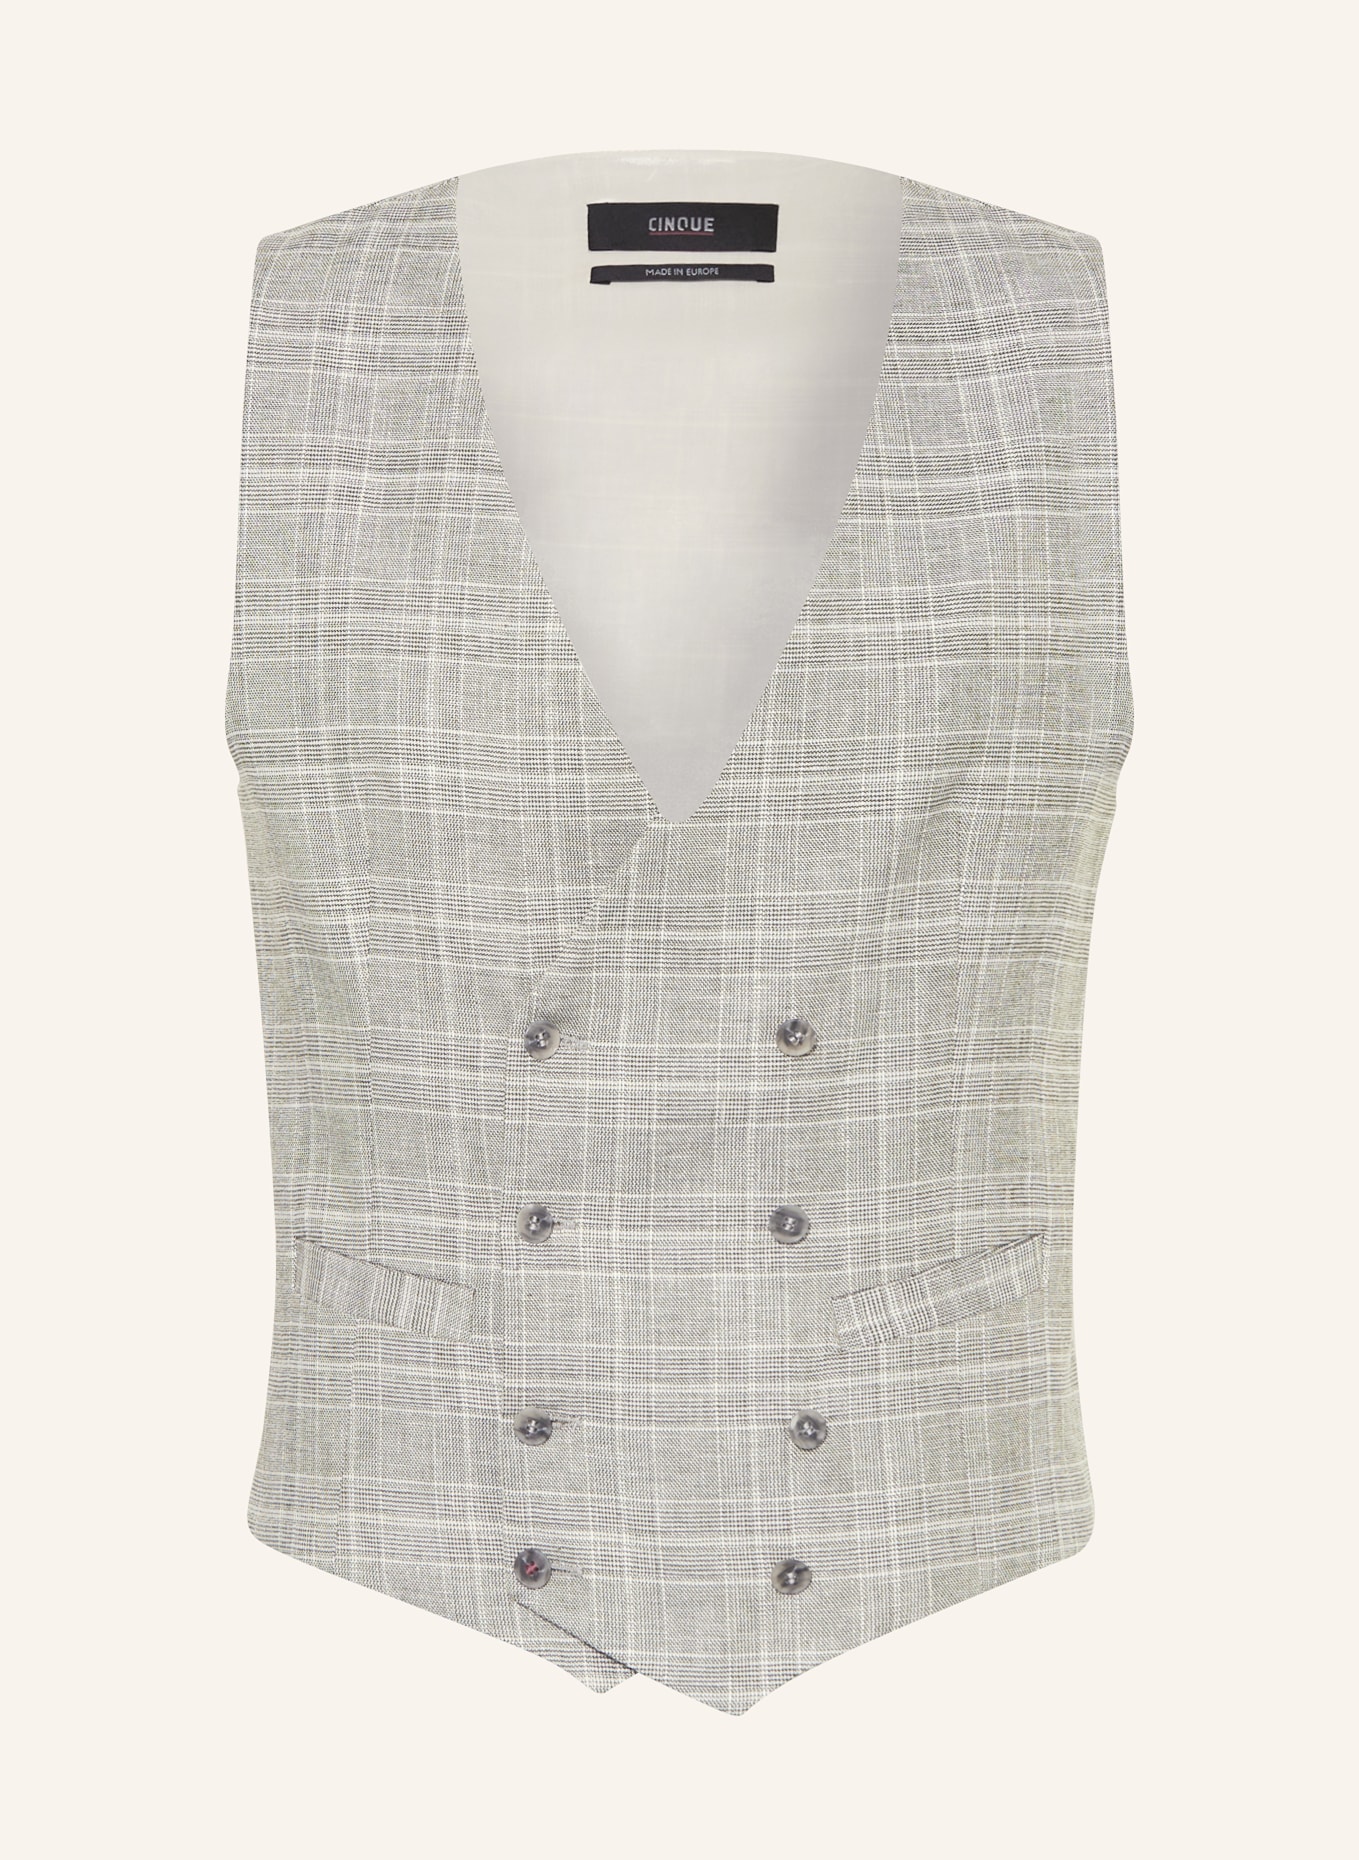 CINQUE Suit vest CIVOLTA regular fit, Color: 82 hellgrUEn (Image 1)